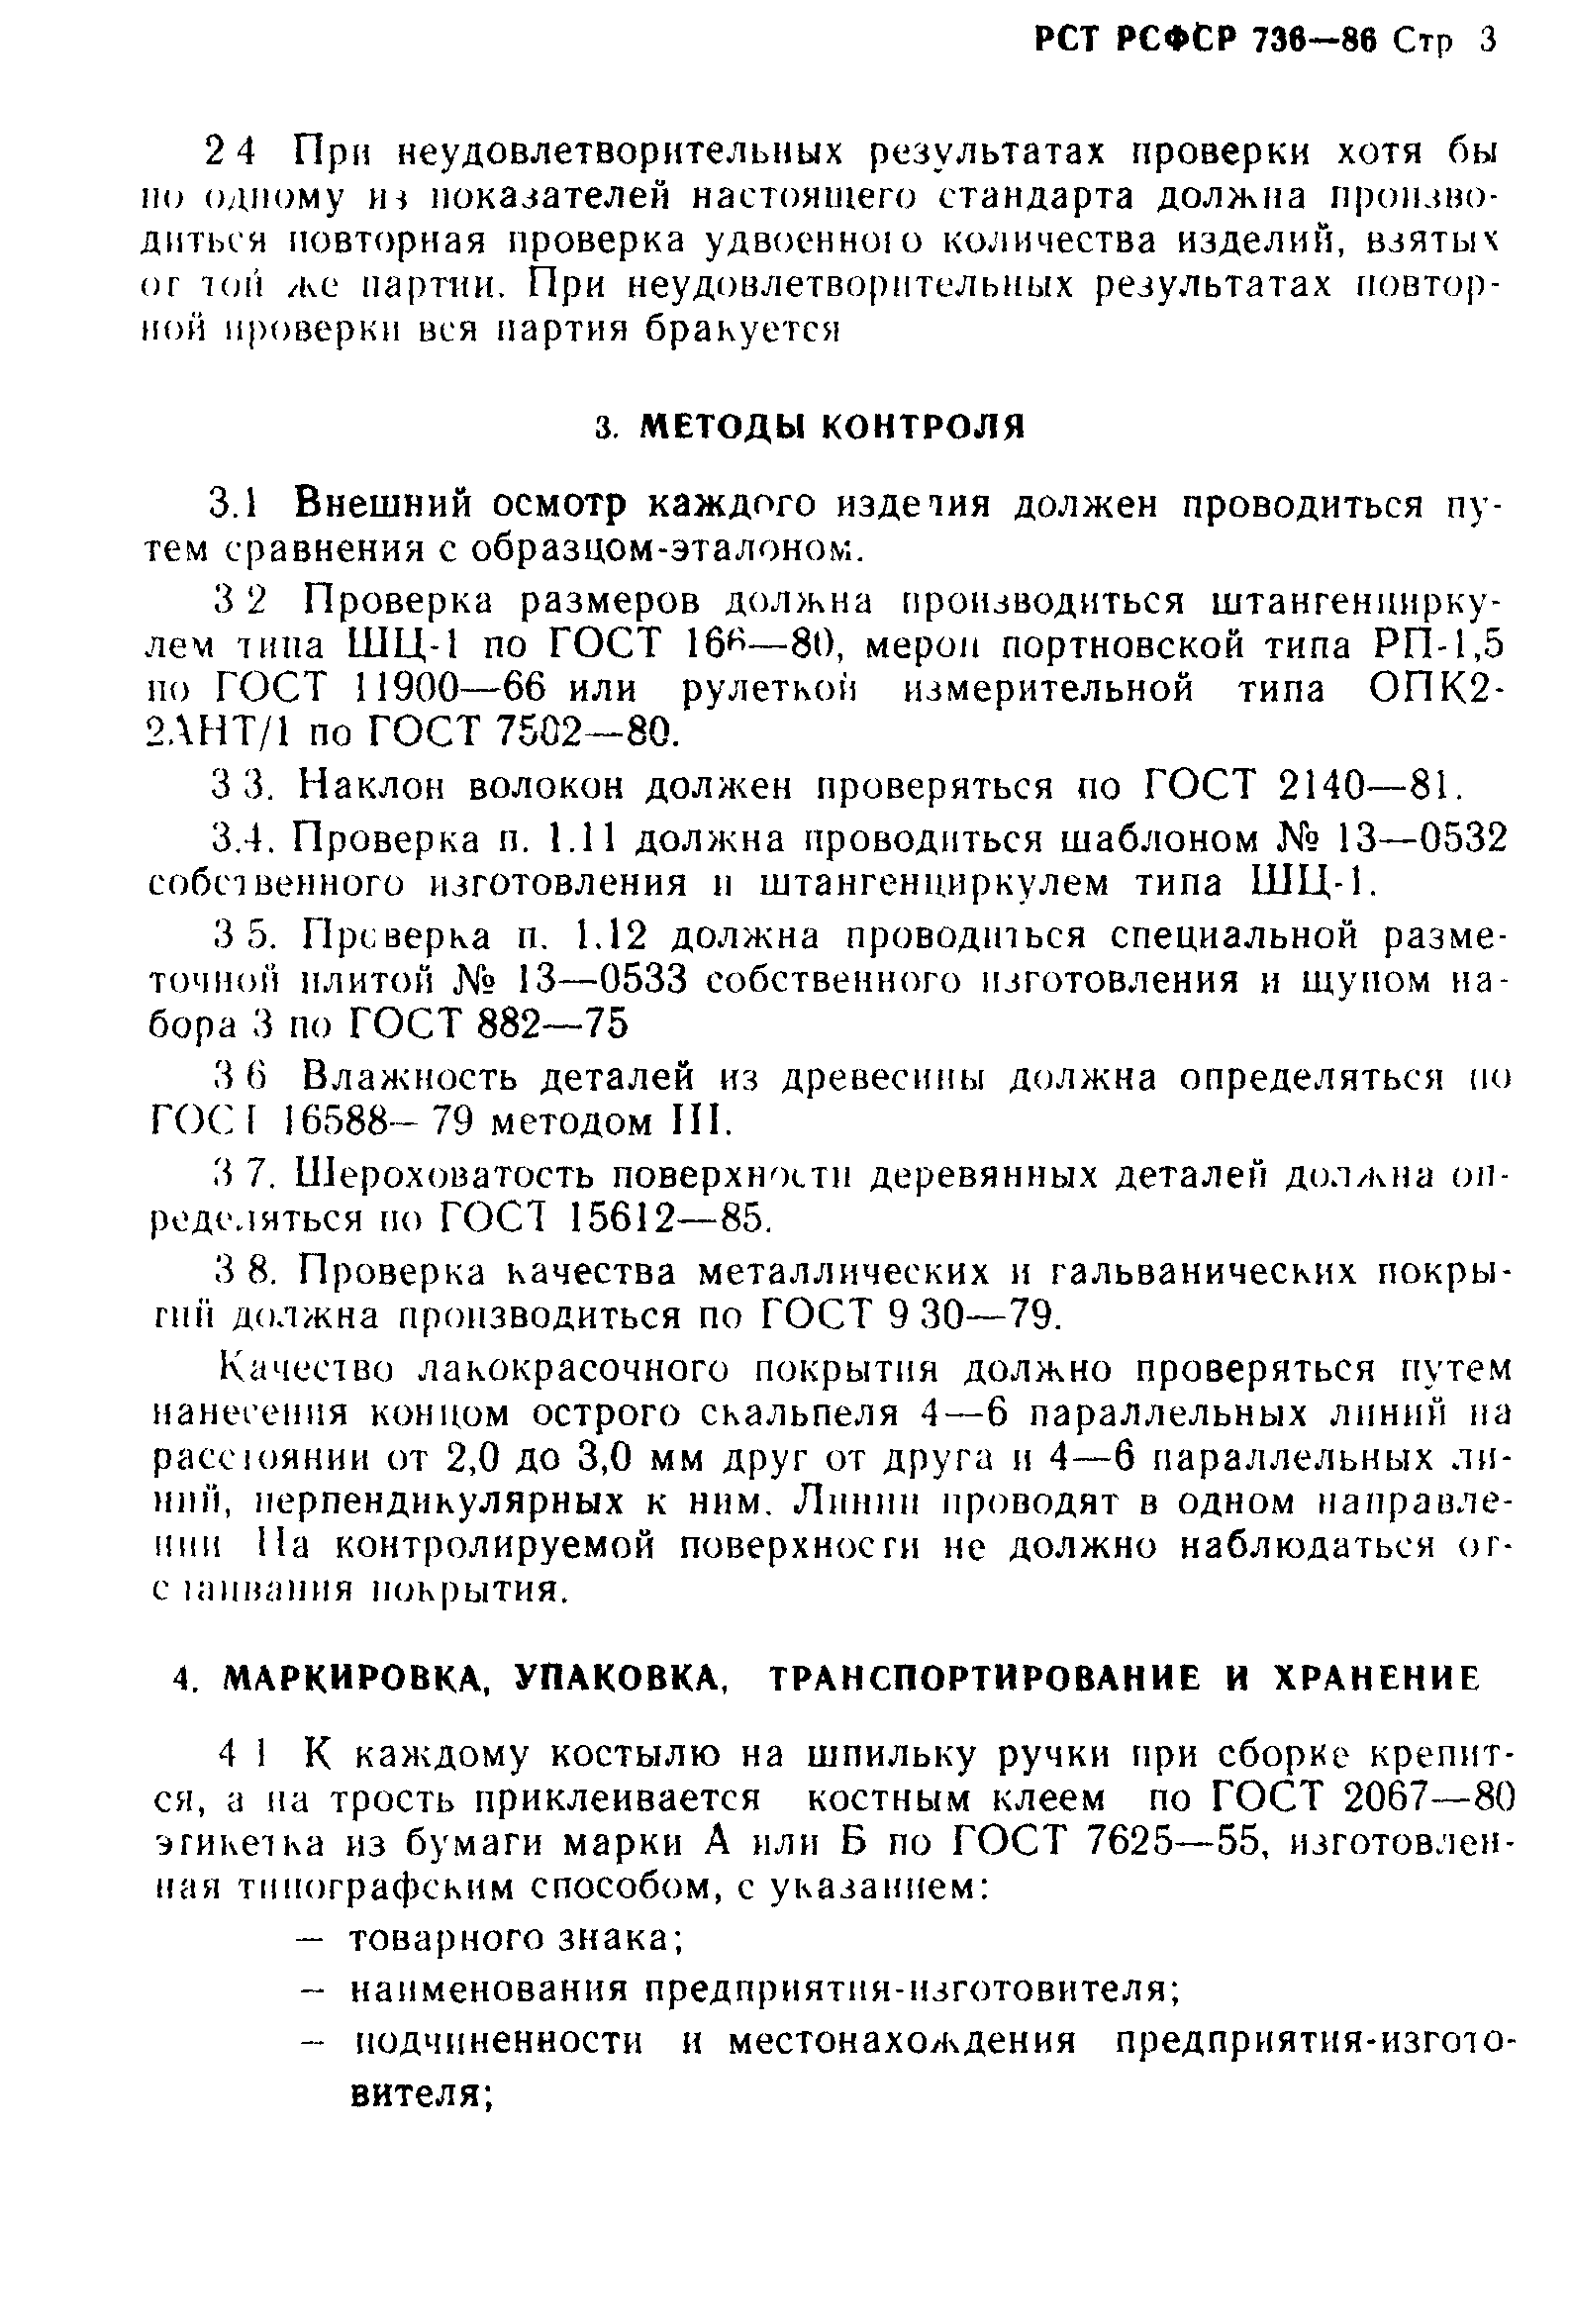 РСТ РСФСР 736-86